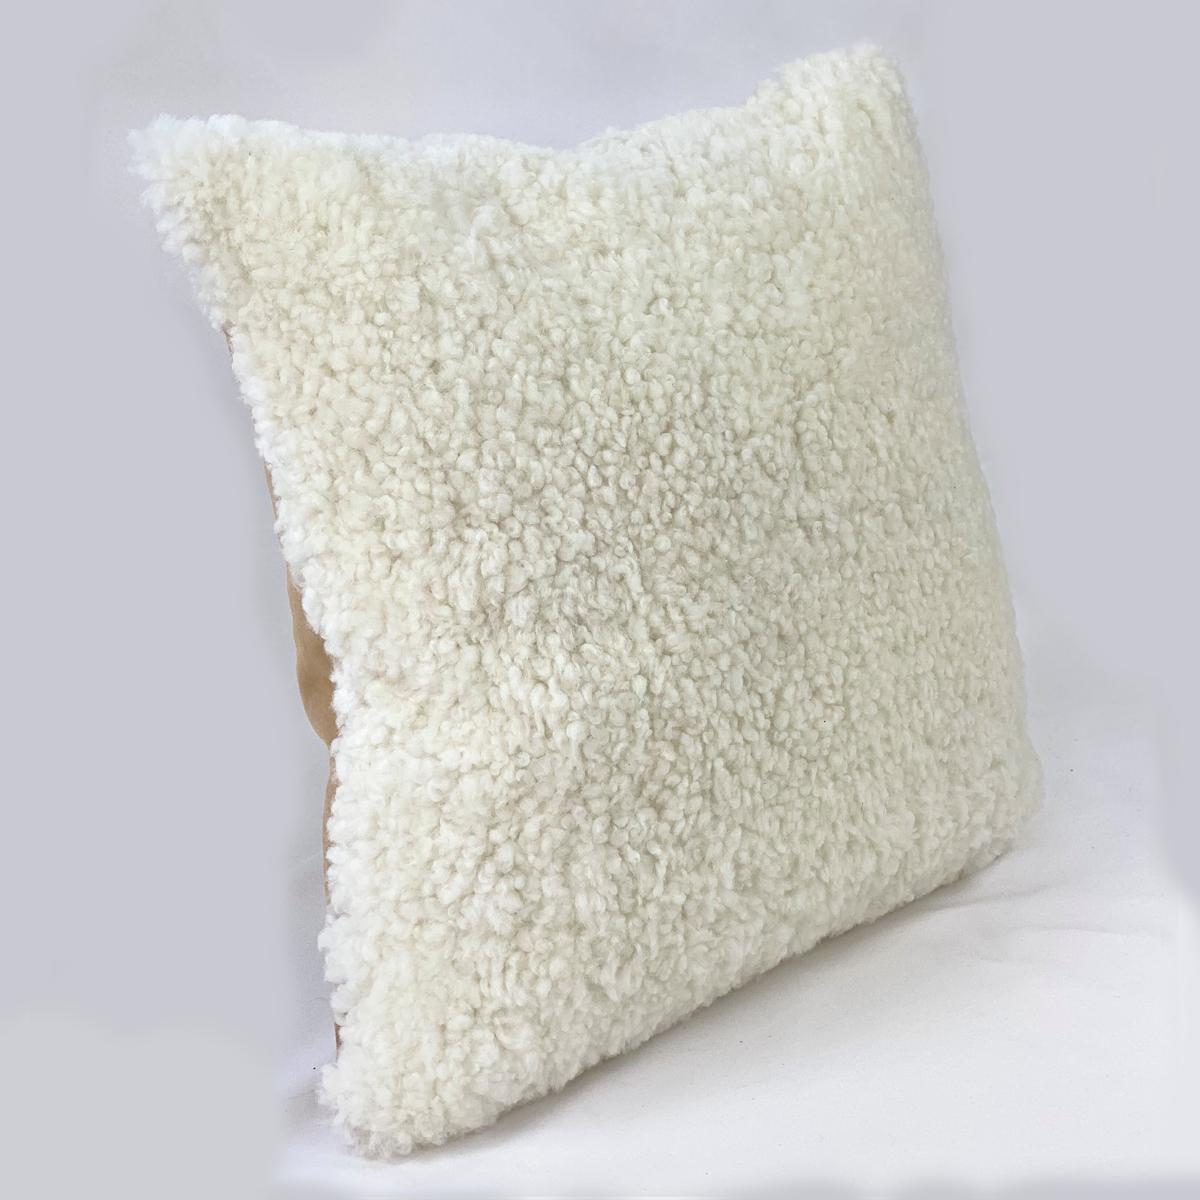 Verleihen Sie Ihrem Interieur einen erfrischenden Touch mit diesem weißen Shearling-Schafsfell-Kissen. Die Schafwolle hat einen lockigen, kurzen Wollflor, der dem Raum eine einladende und charmante Struktur verleiht. Dieses Shearling-Kissen aus der